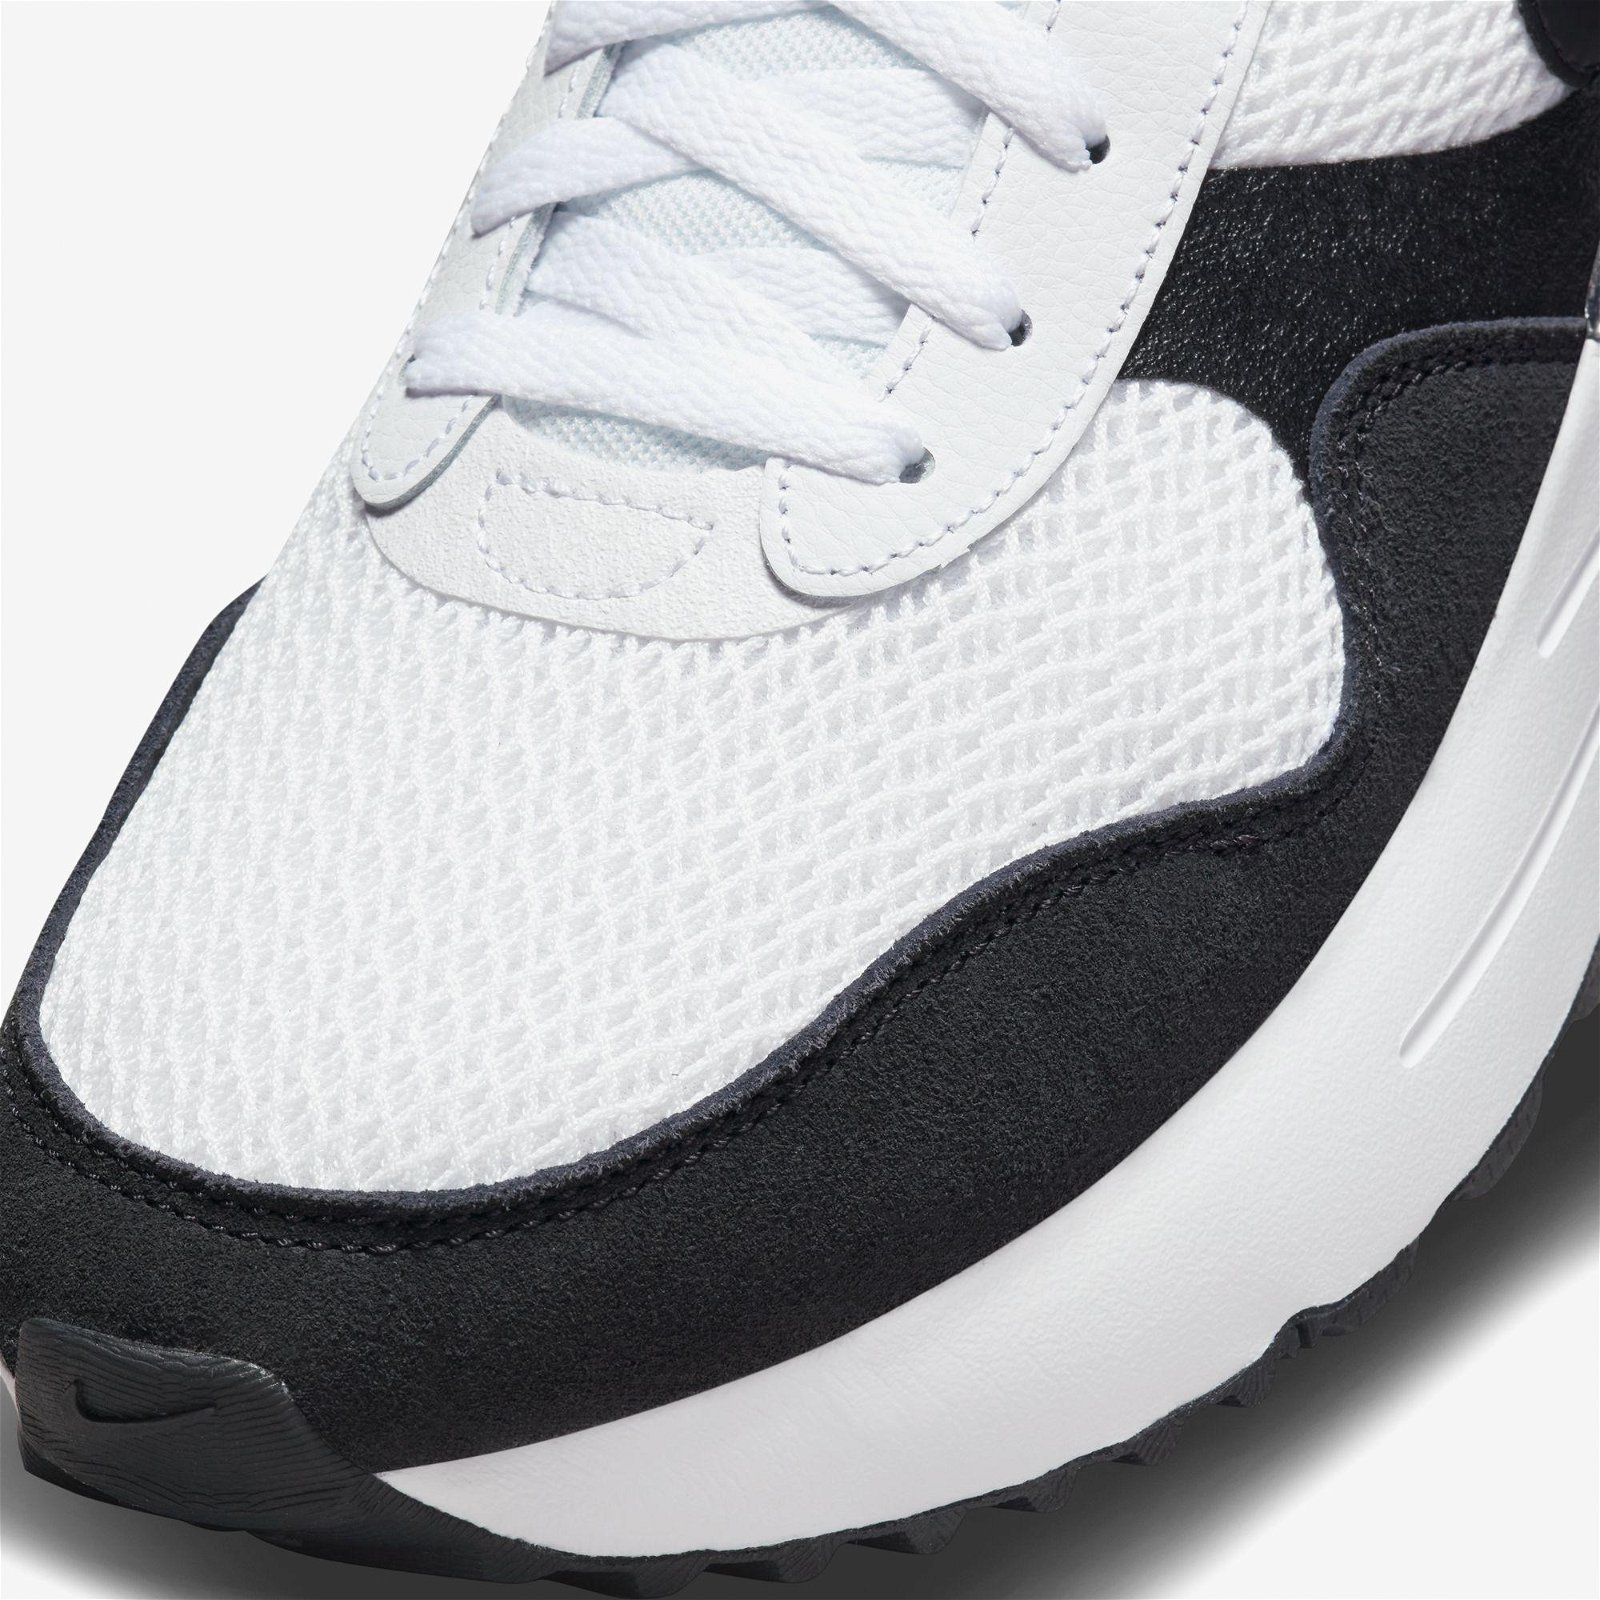 Nike Air Max System Erkek Beyaz Spor Ayakkabı